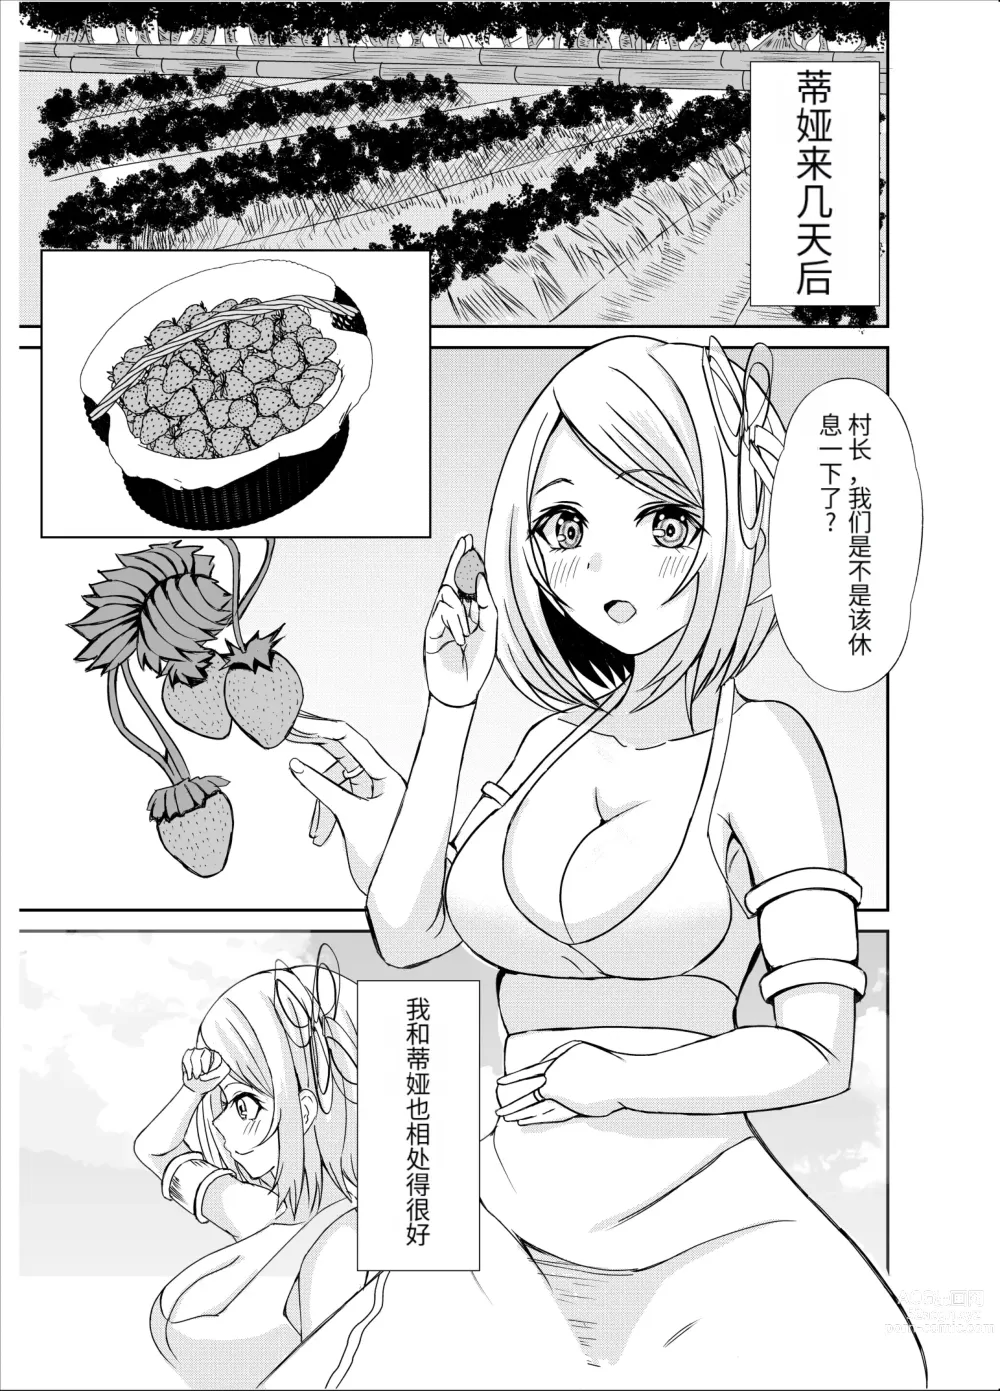 Page 2 of doujinshi Gaman Dekinai Ore no Karada wa Kyou mo Kenko! 2